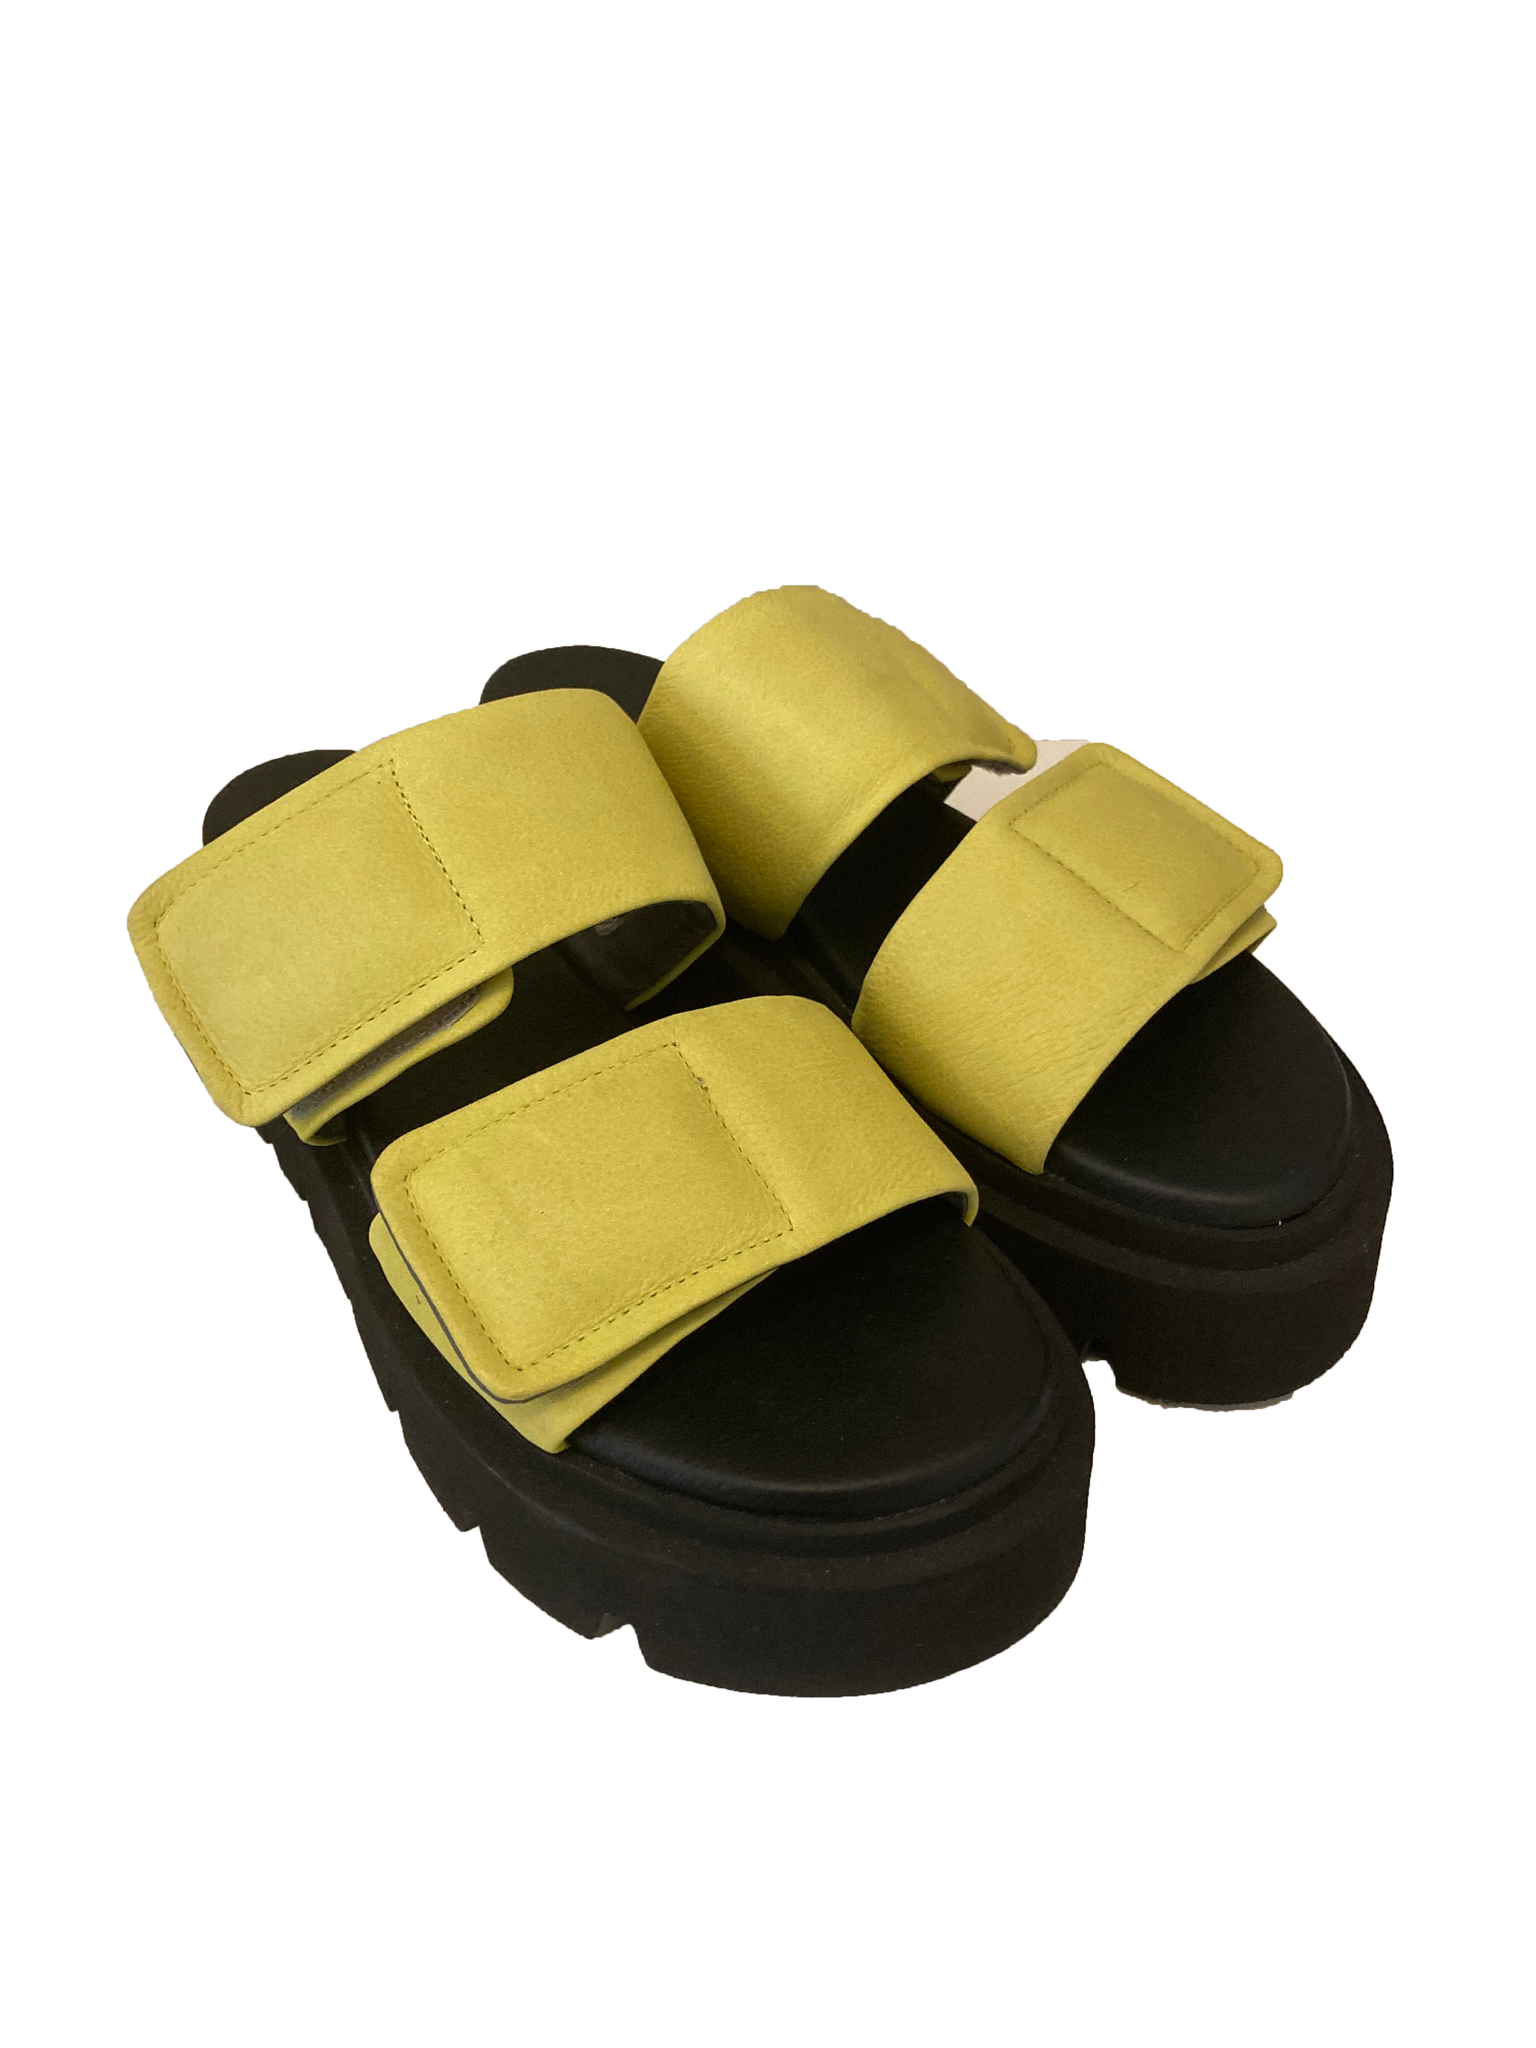 Leather Slide Sandals